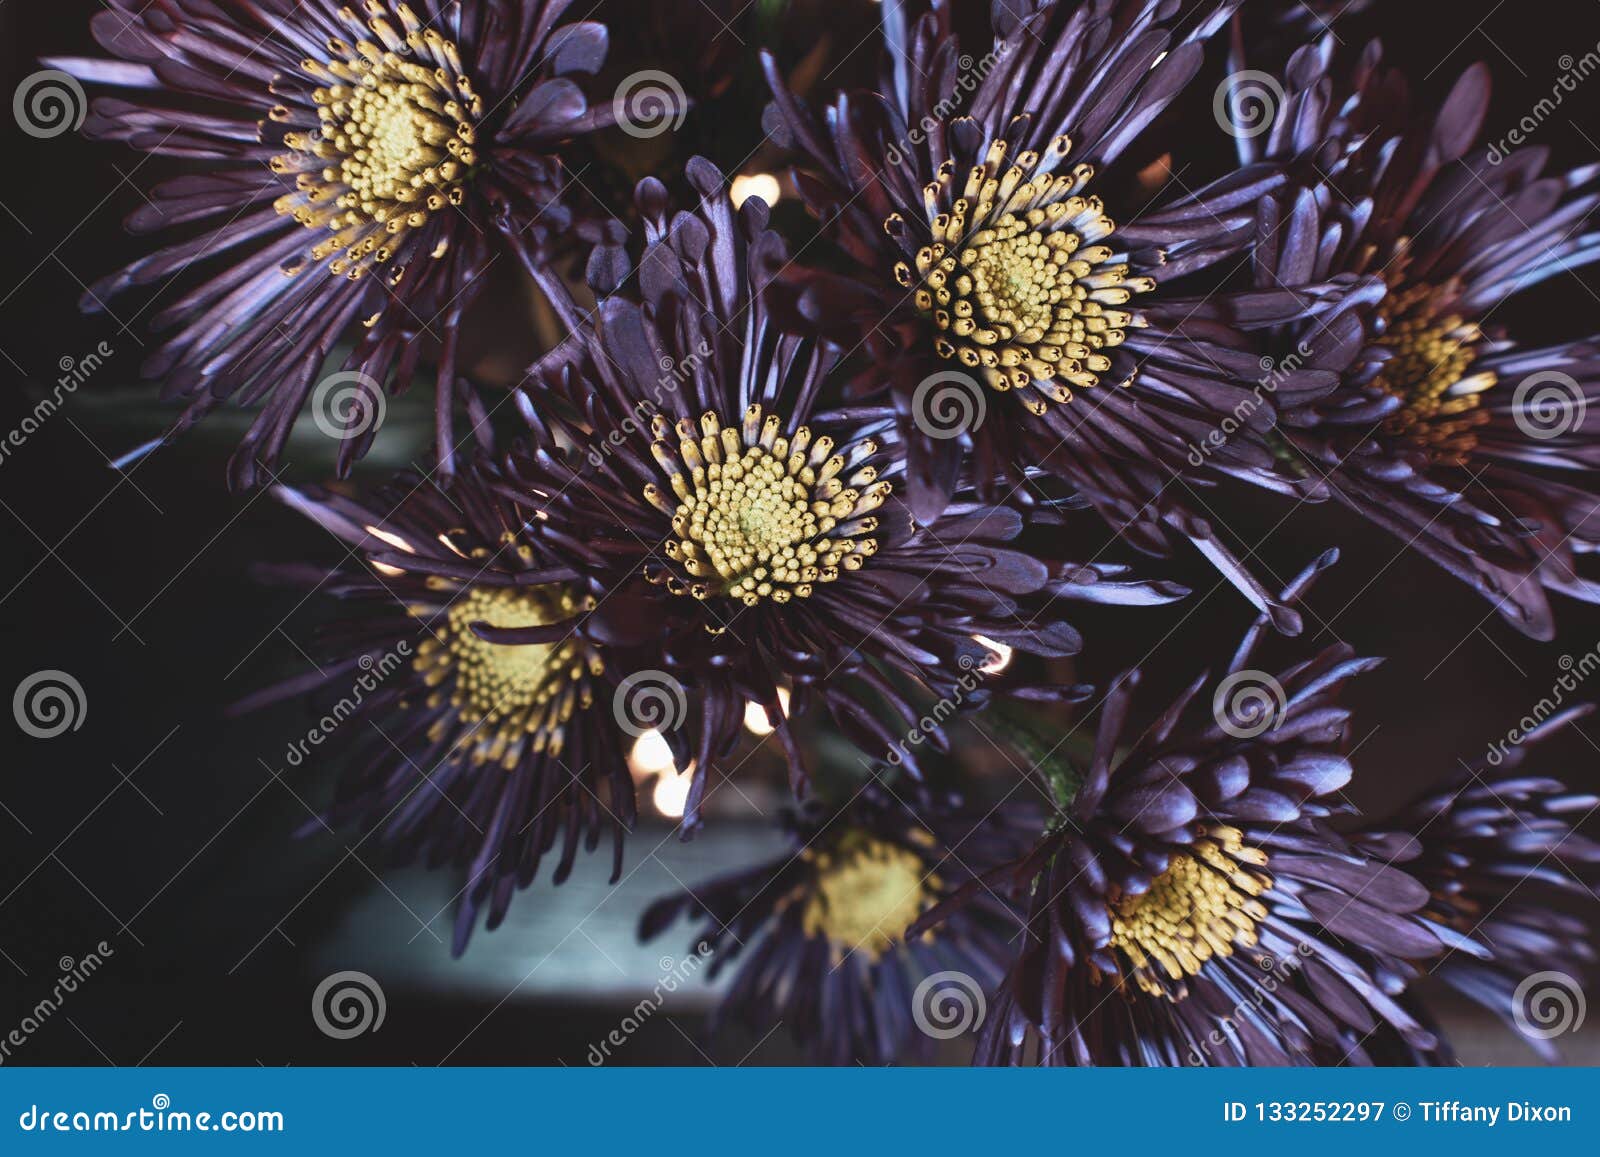 Details 300 flores de color morado oscuro